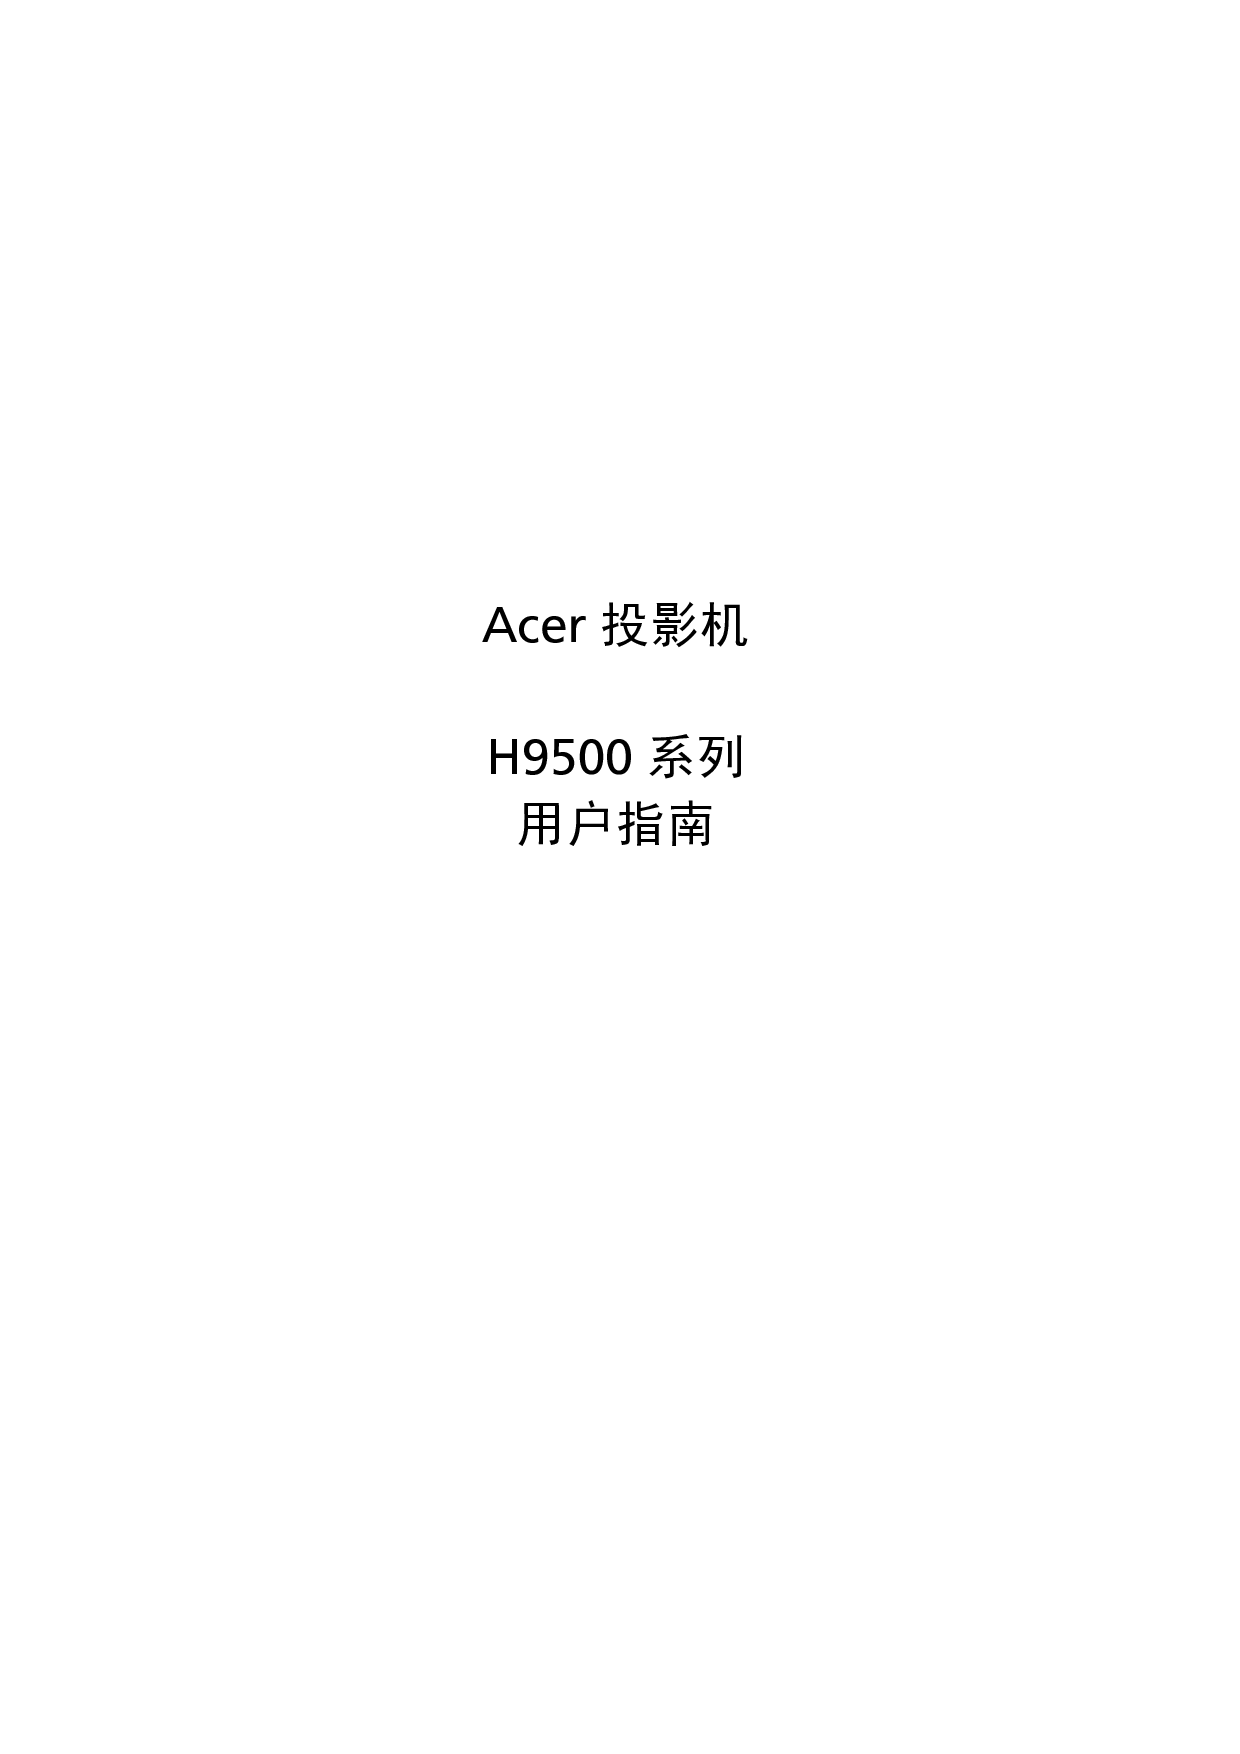 宏基 Acer H9500 用户指南 封面